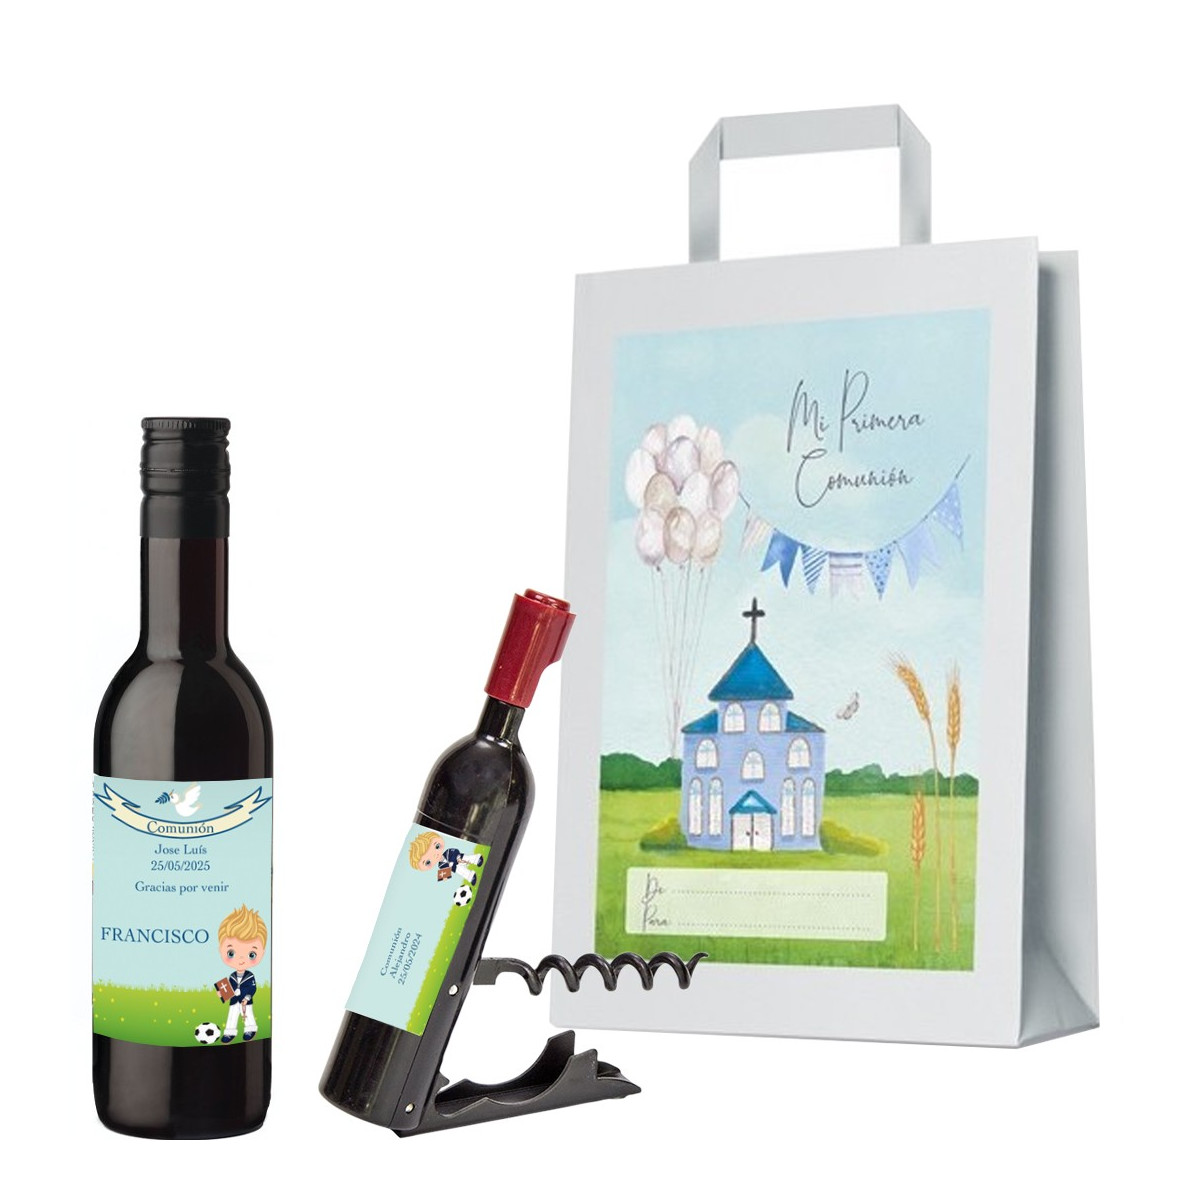 Botella comunión de vino y sacacorchos personalizados con nombre de invitado nombre niño y fecha en bolsa de regalo comunión